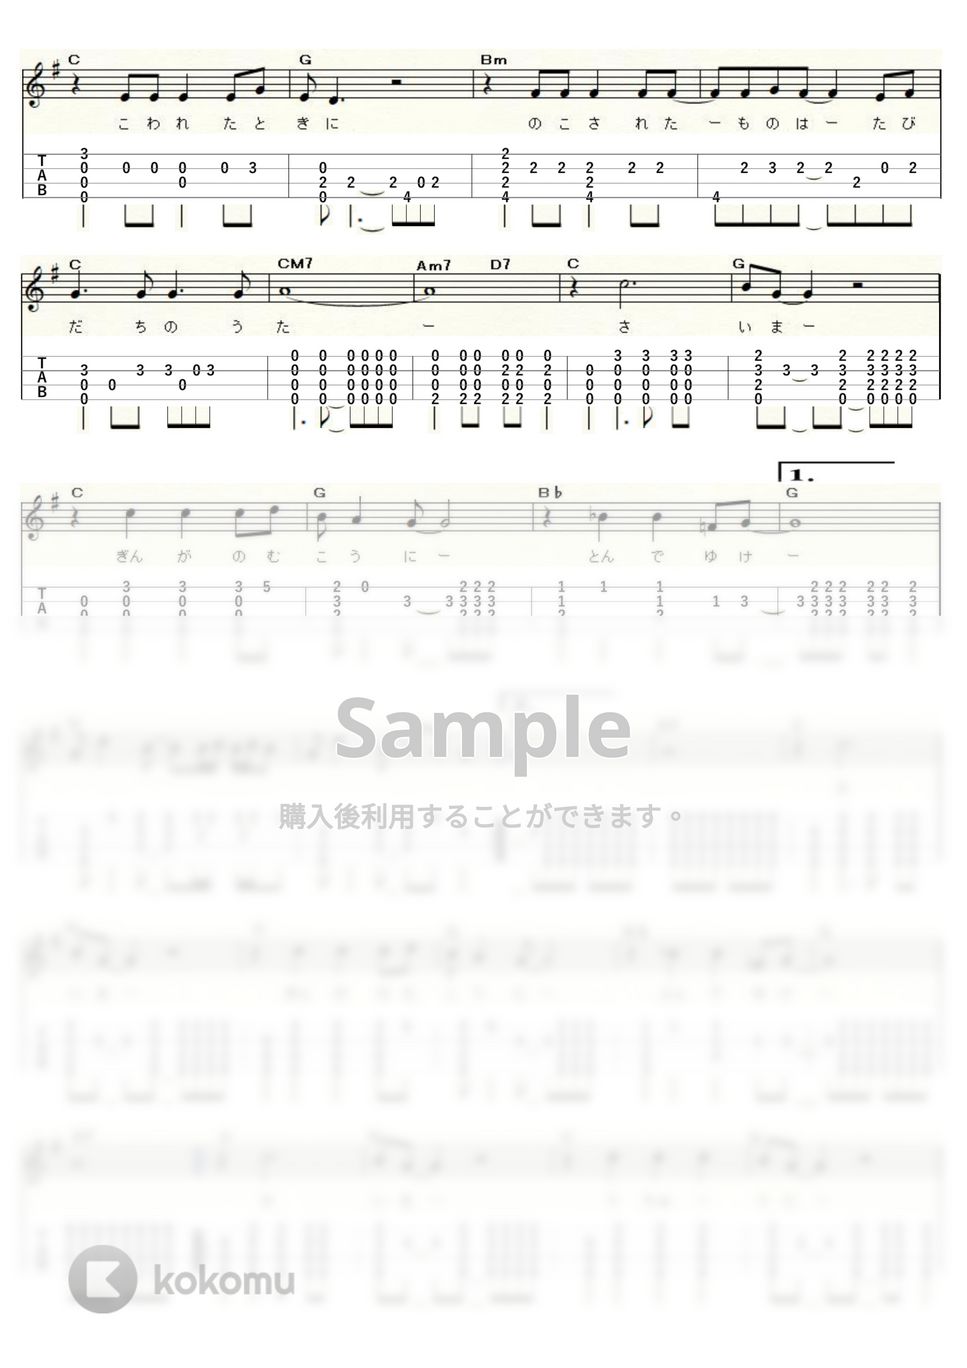 上條恒彦と六文銭 - 出発の歌 (ｳｸﾚﾚｿﾛ / Low-G / 中級) by ukulelepapa